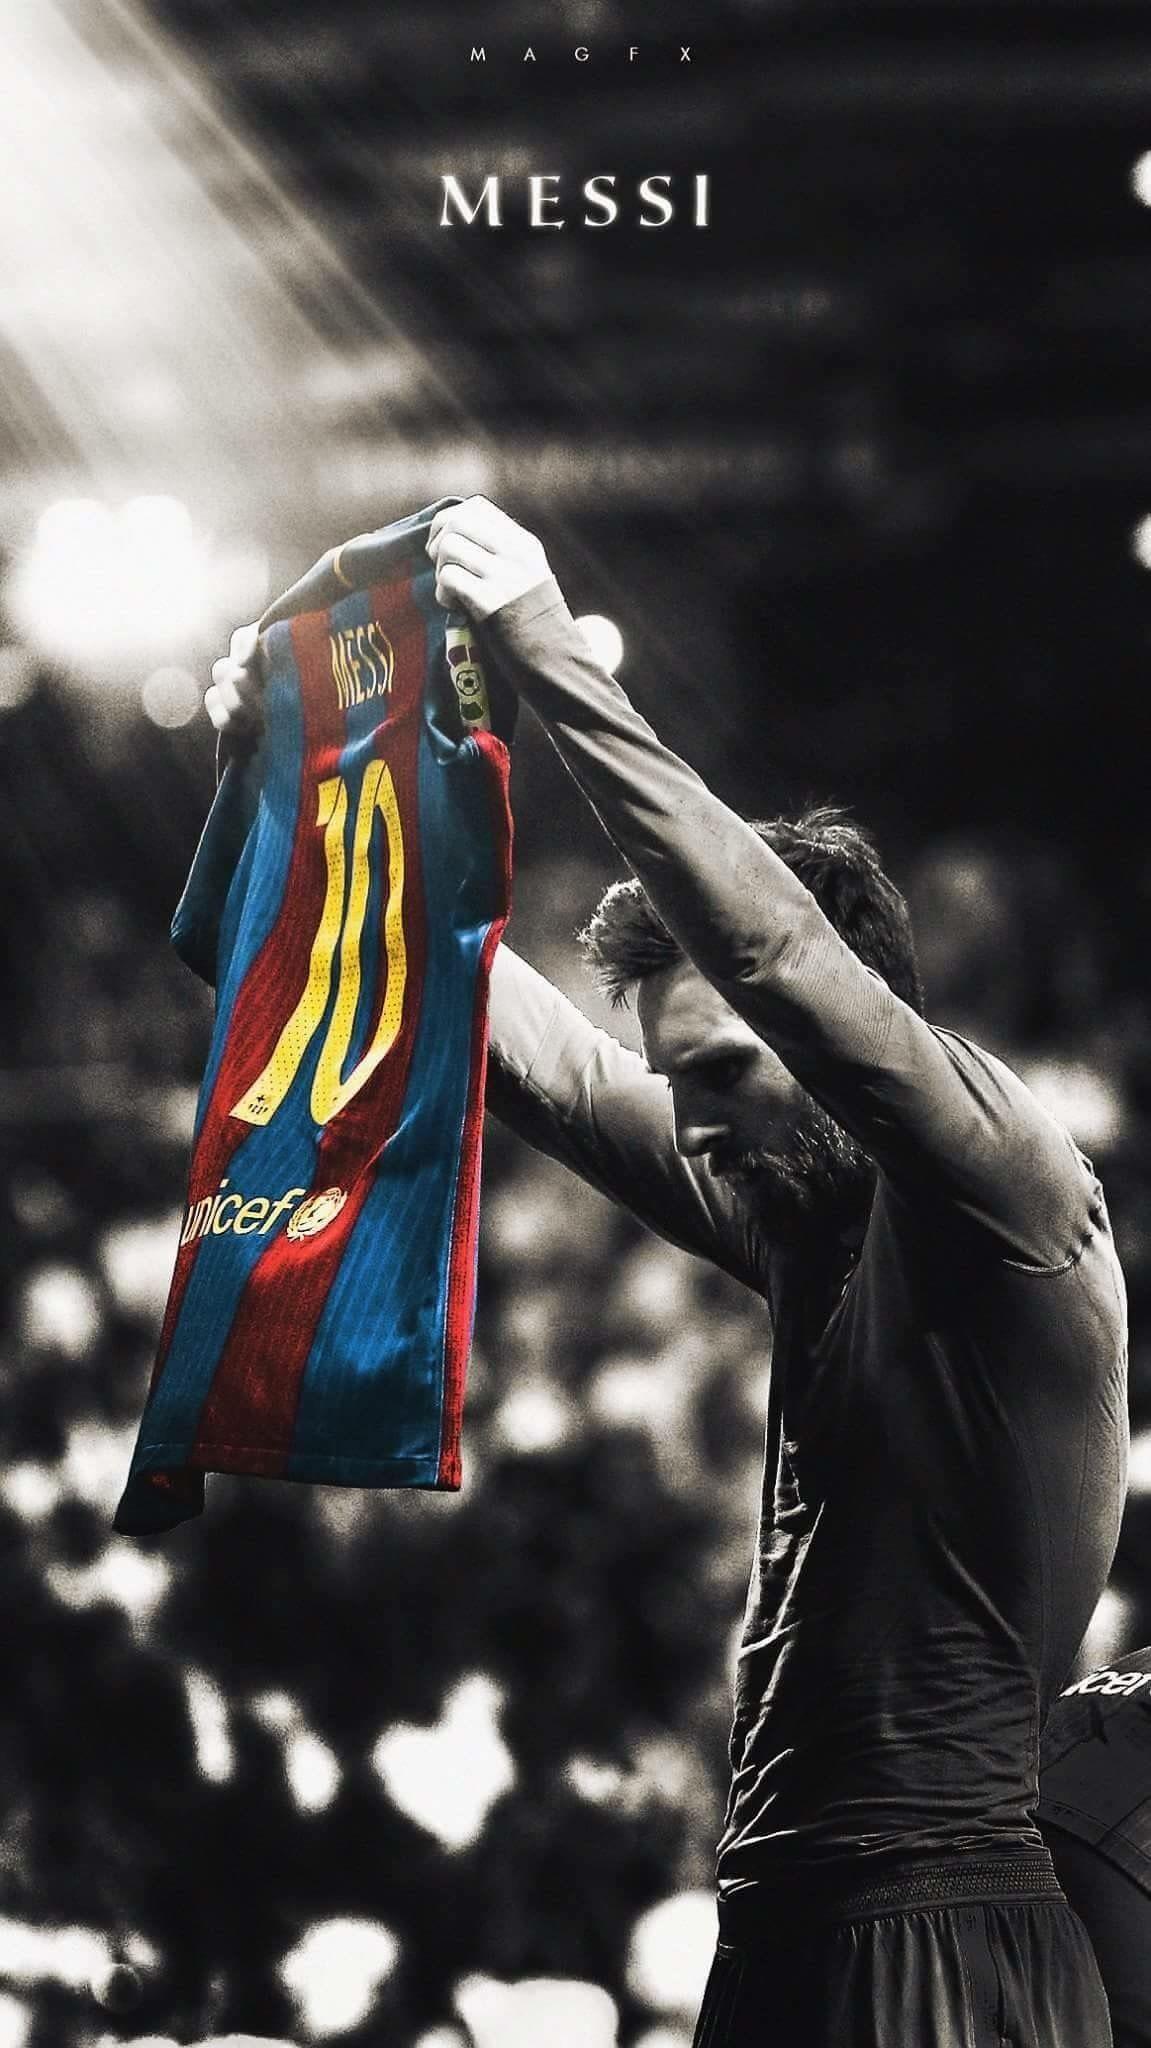 Hình nền kỷ niệm Messi: Chào mừng đến với bộ sưu tập hình nền kỷ niệm về ngôi sao sân cỏ Lionel Messi! Những bức ảnh này sẽ giúp bạn duy trì ký ức về các khoảnh khắc tuyệt vời của anh ta trong suốt sự nghiệp đỉnh cao. Hãy nhấp vào ảnh để trải nghiệm những cảm xúc và kỷ niệm đặc biệt này!